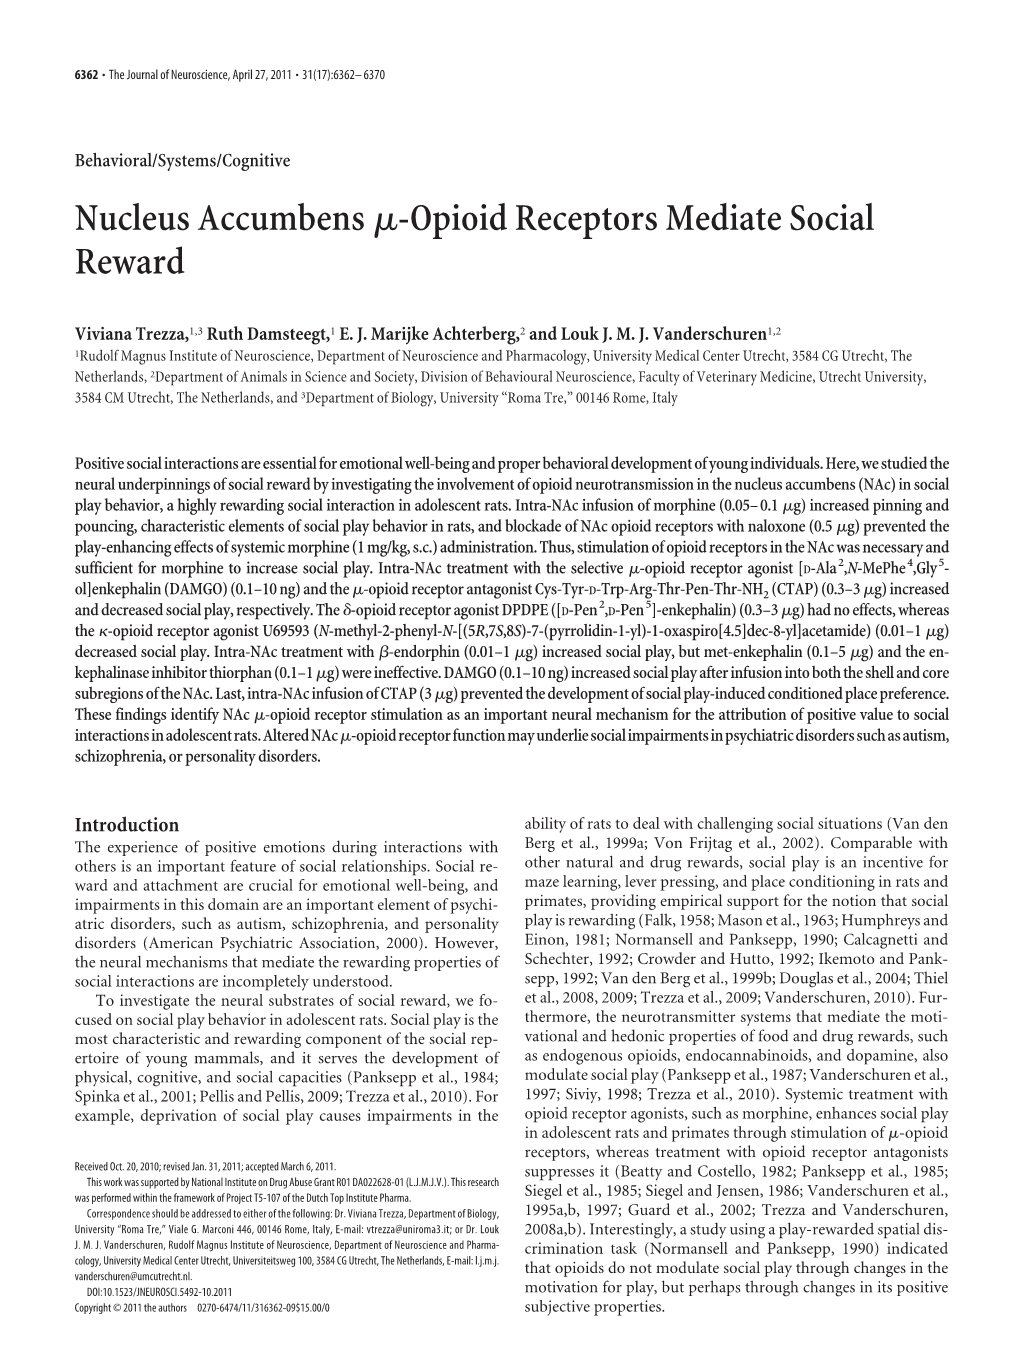 Nucleus Accumbensμ-Opioid Receptors Mediate Social Reward